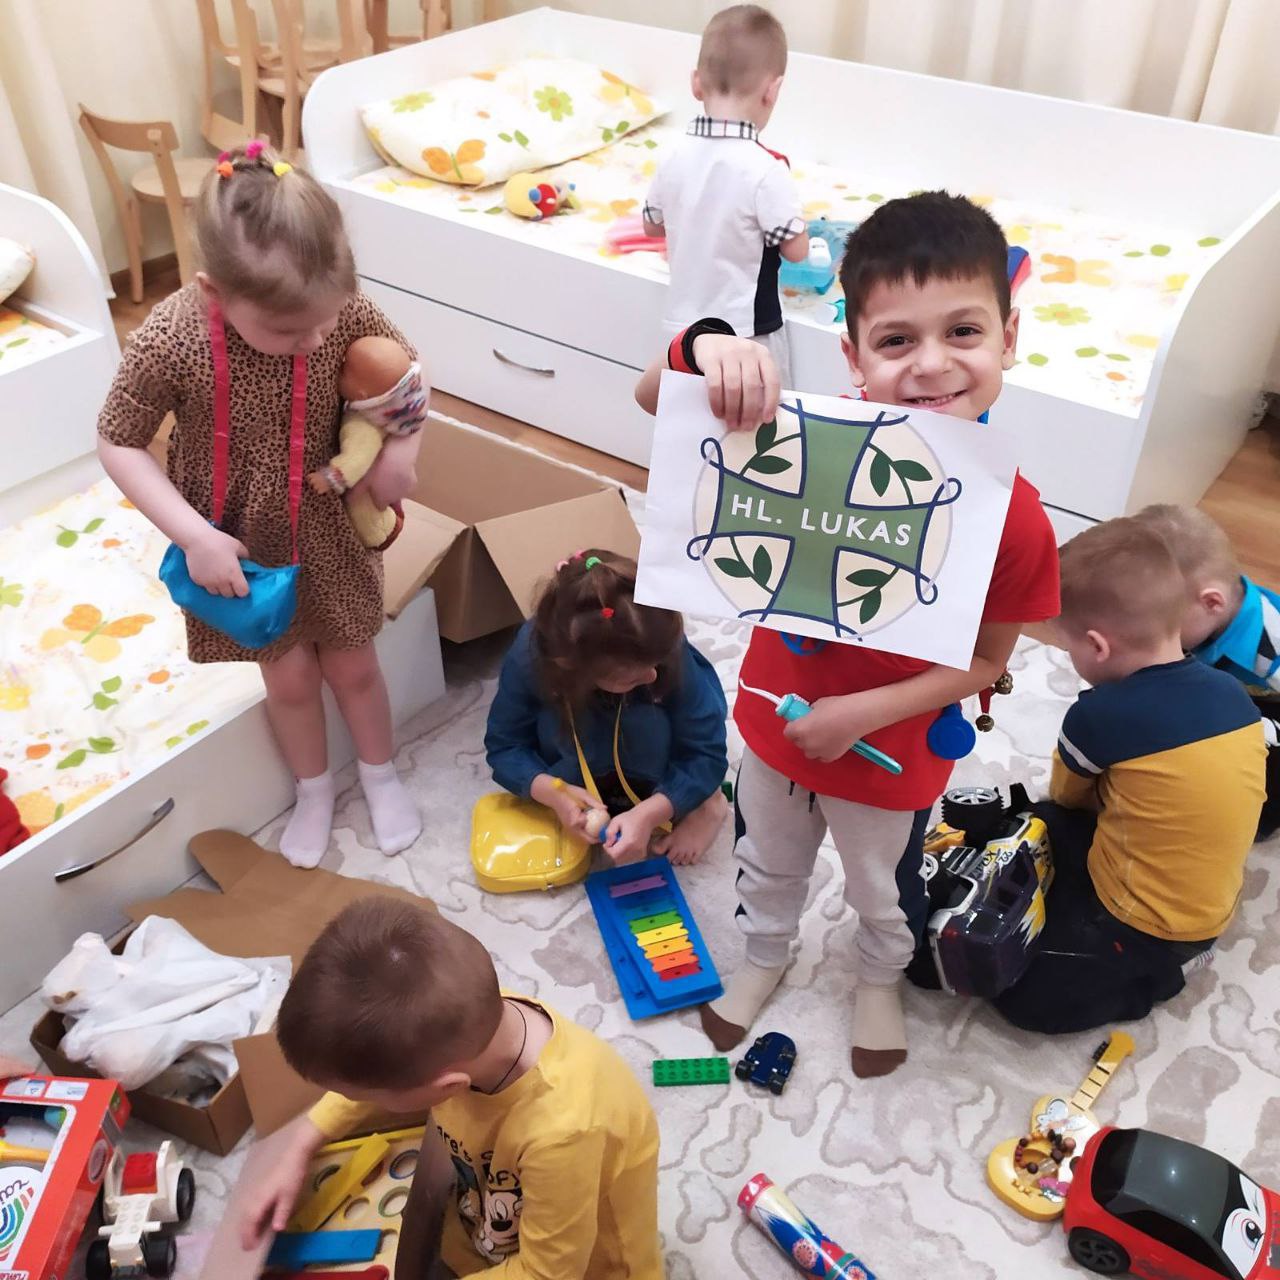 Sachspende – Lieferung von Hygieneartikeln und Lebensmitteln an ein ukrainisches intern umgesiedeltes Waisenhaus aus Kramatorsk